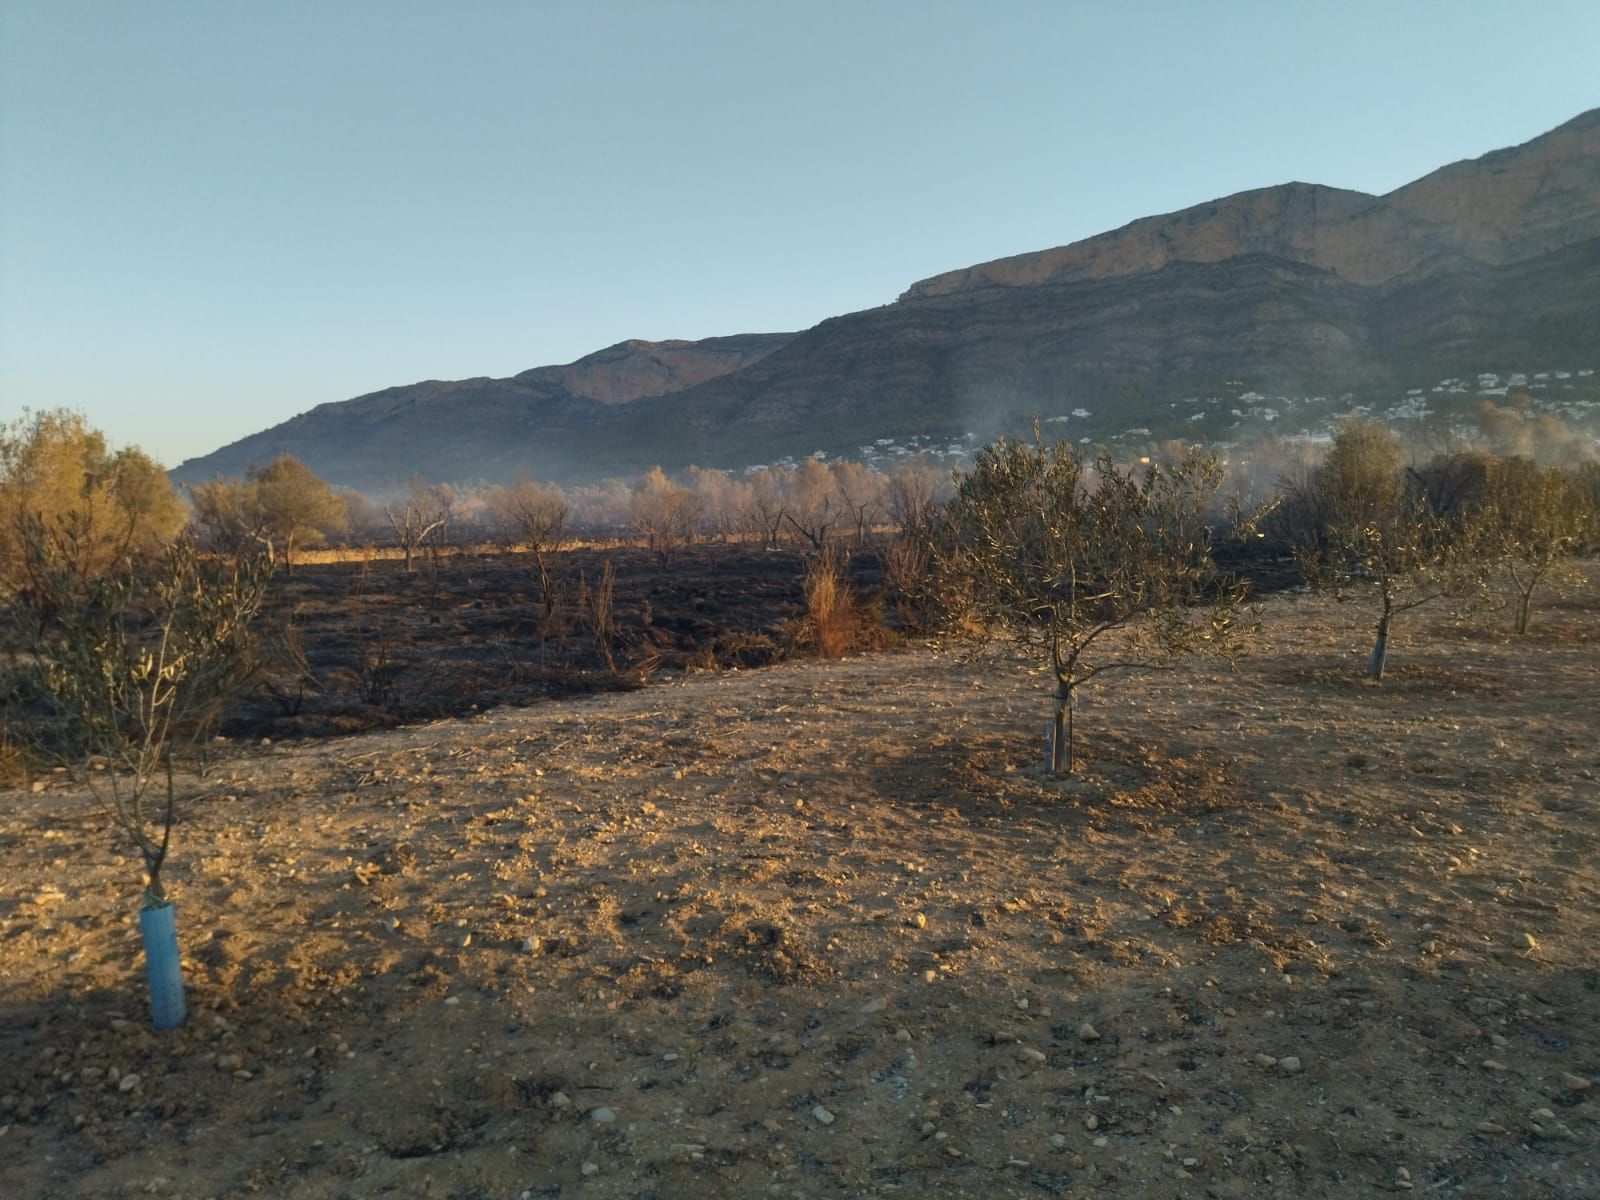 El valle agrícola del Montgó, reducido a cenizas (imágenes)